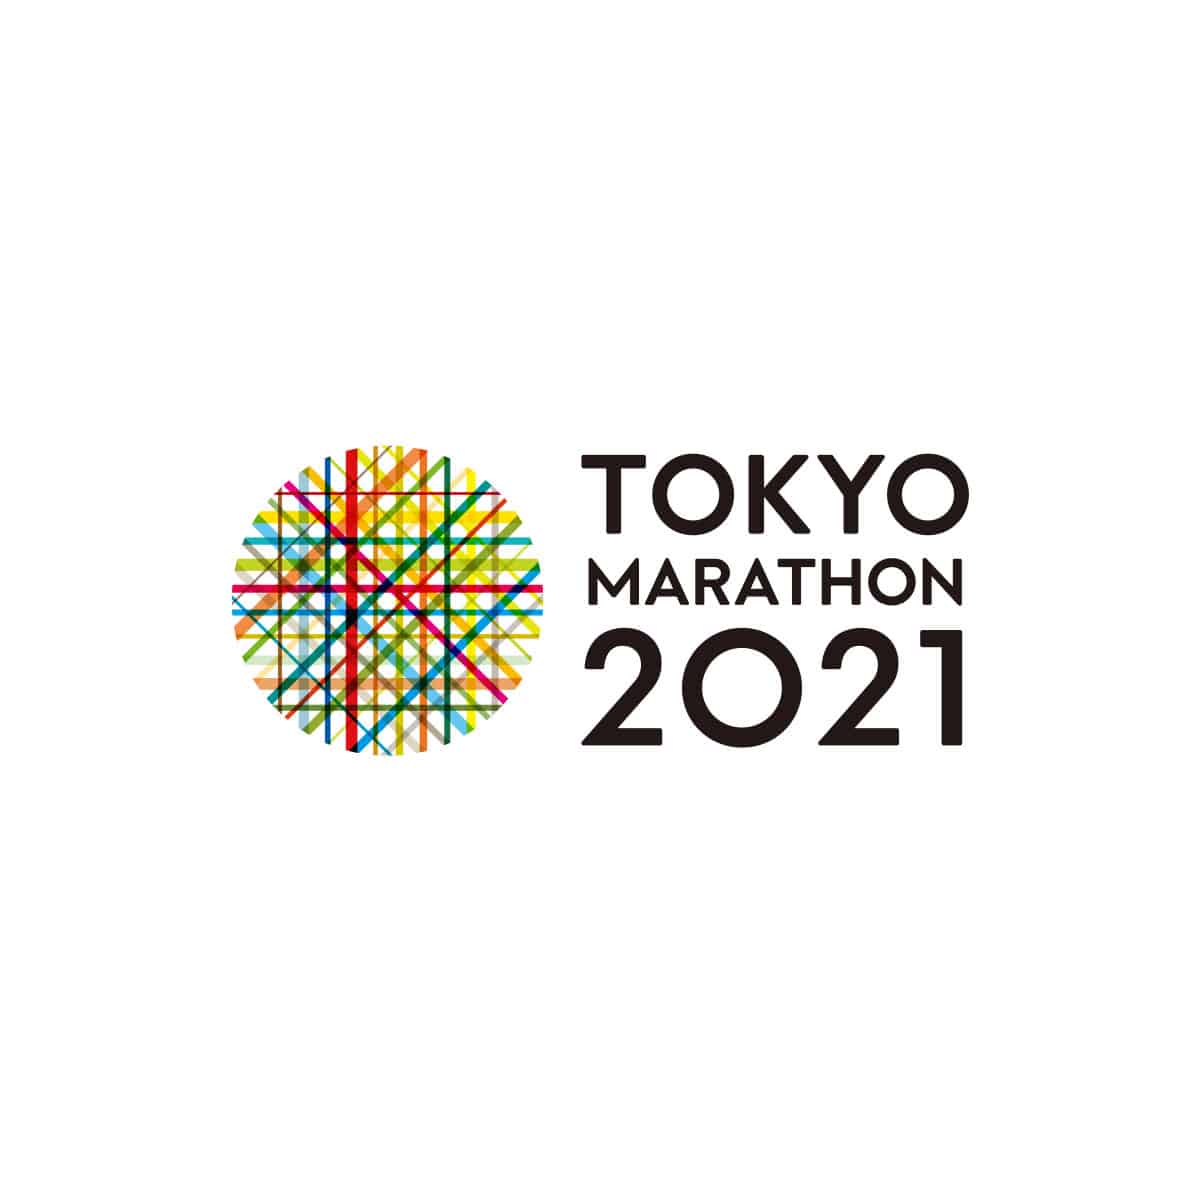 Posponen el Maratón de Tokyo 2021